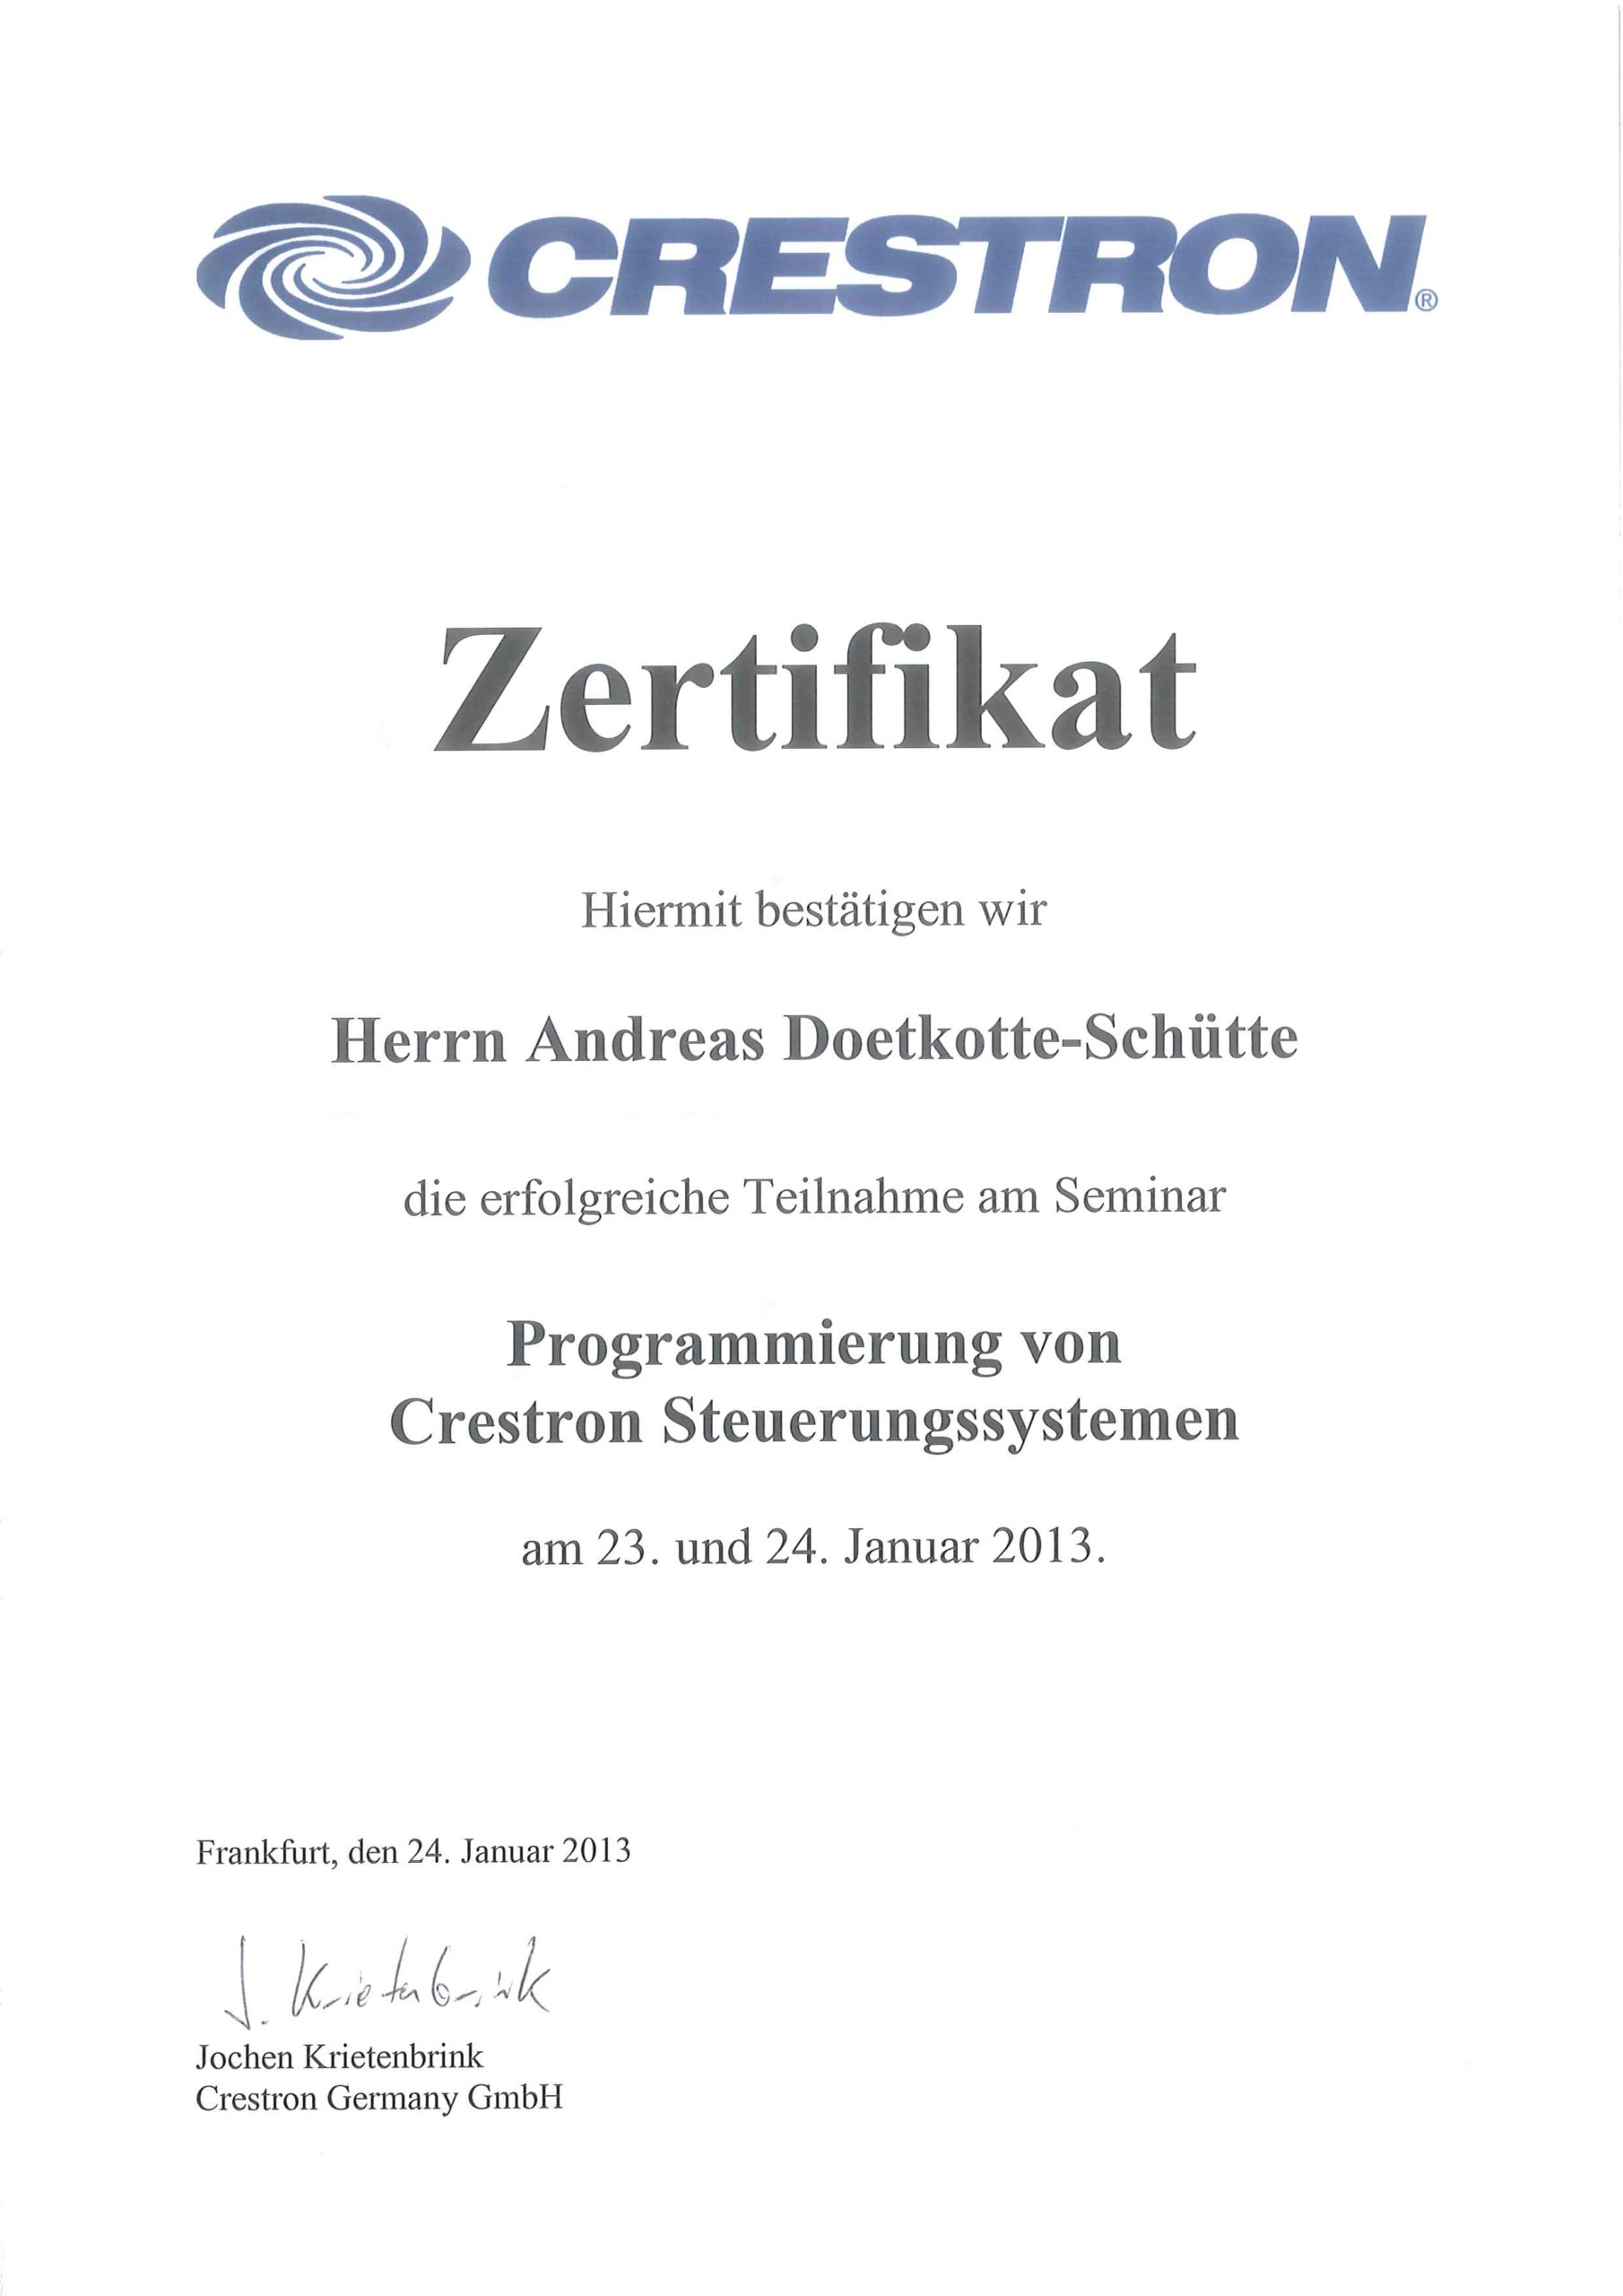 Crestron Zertifikate Andreas Doetkotte-Schütte Programmierung Crestron